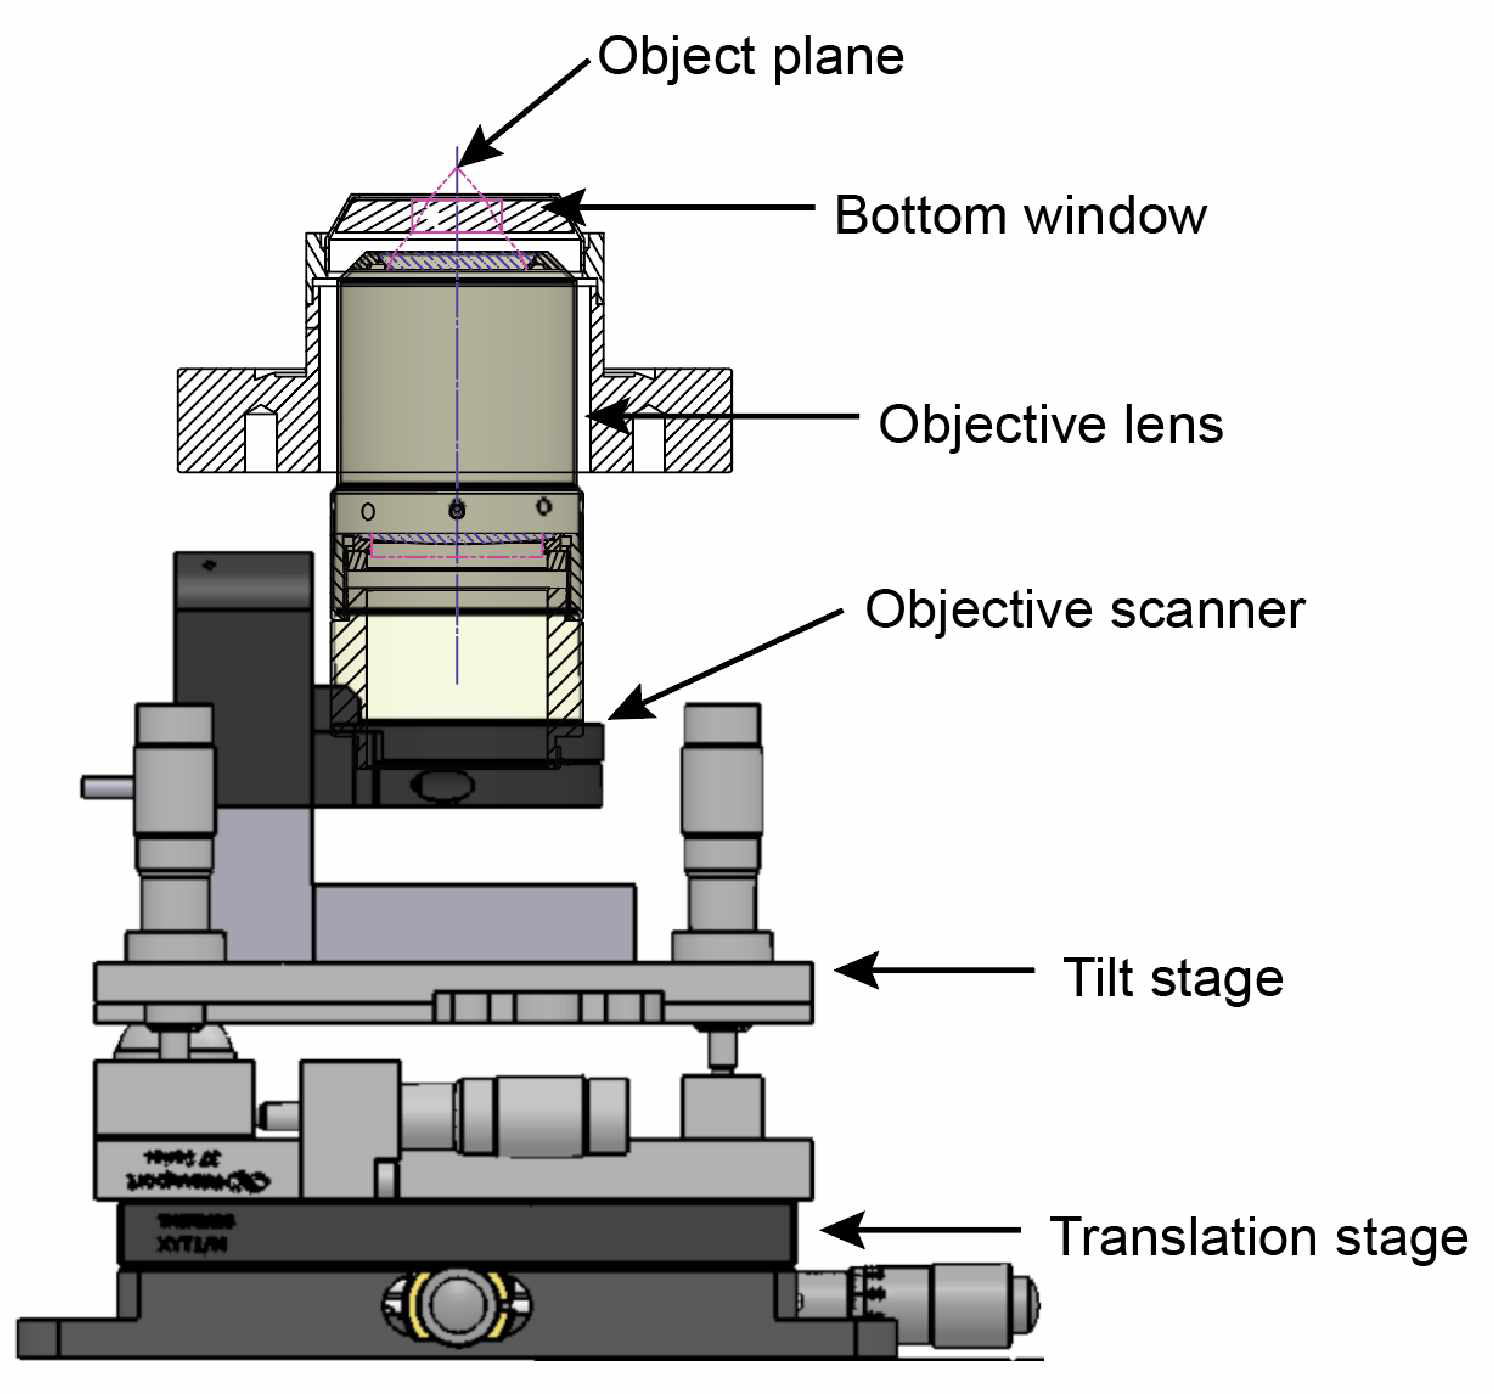 대물렌즈 조절 시스템. 대물렌즈의 Working distance는 12.5 mm 로 윈도우의 두께 5mm 에 대한 구면 수차가 보정되어 있다. 본문에 설명된 다섯 가지의 자유도를 조작하기 위해 Tilt state, Objective scanner(piezo), translation stage를 설치하였다